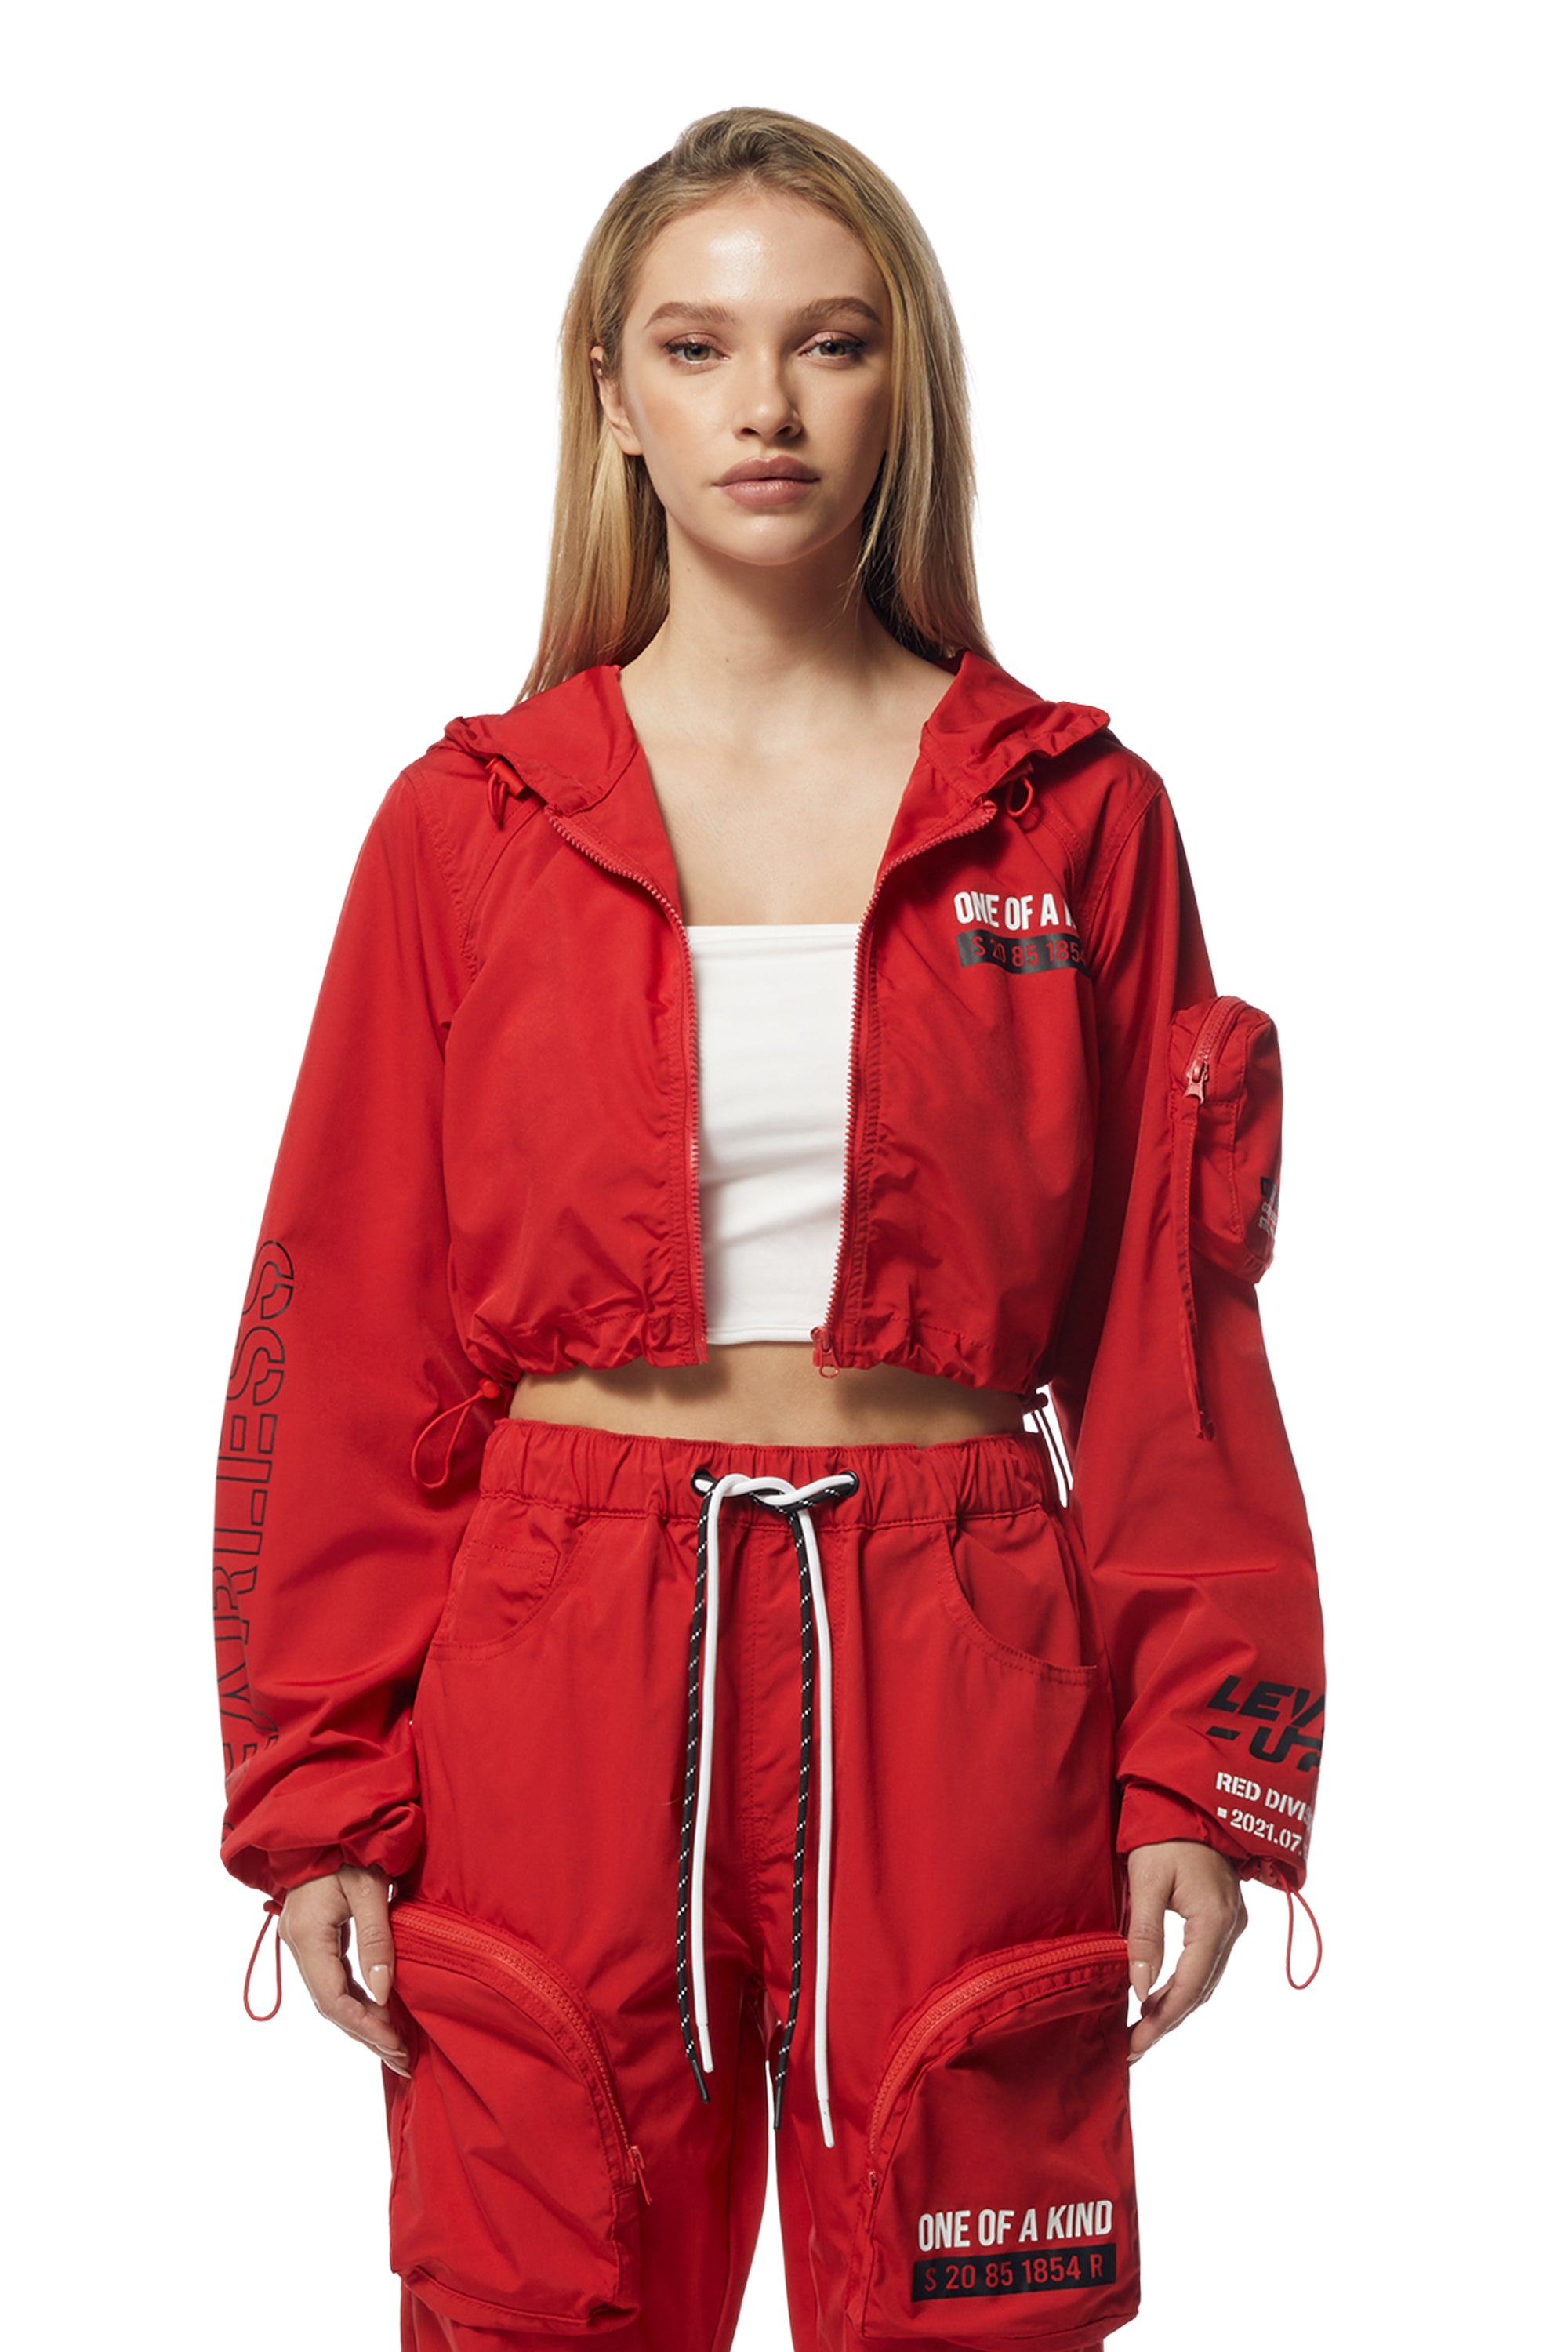 Cropped Windbreaker Full Zip Jacket - True Red